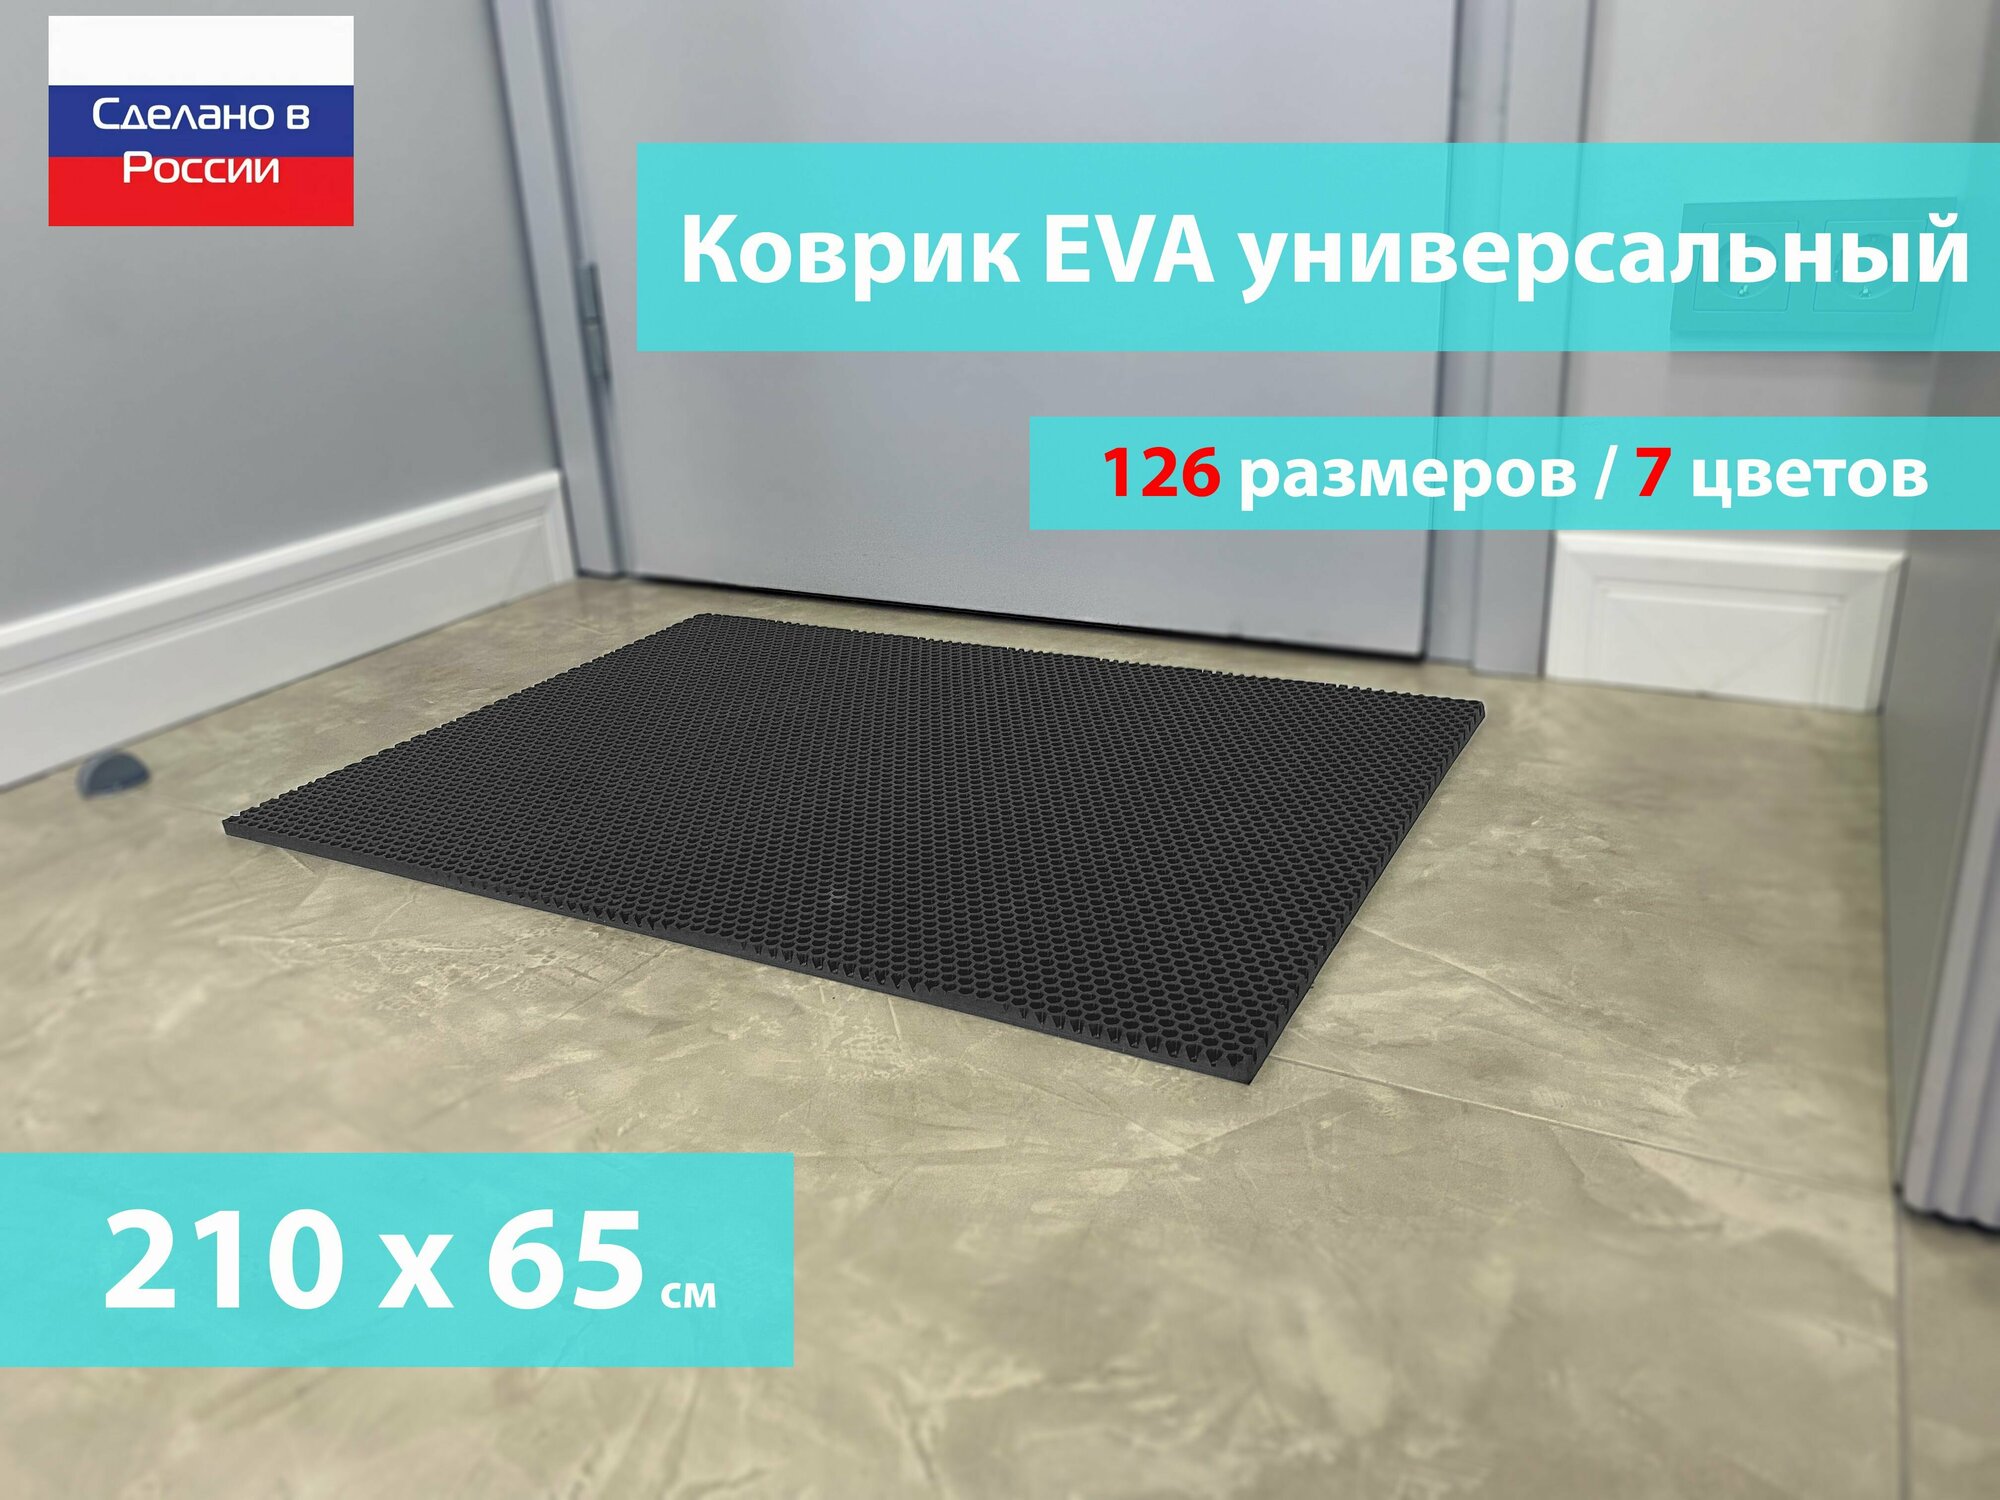 Коврик придверный EVA (ЕВА) в прихожую для обуви / Ковер ЭВА на пол перед дверью/ серый / размер 210 х 65 см